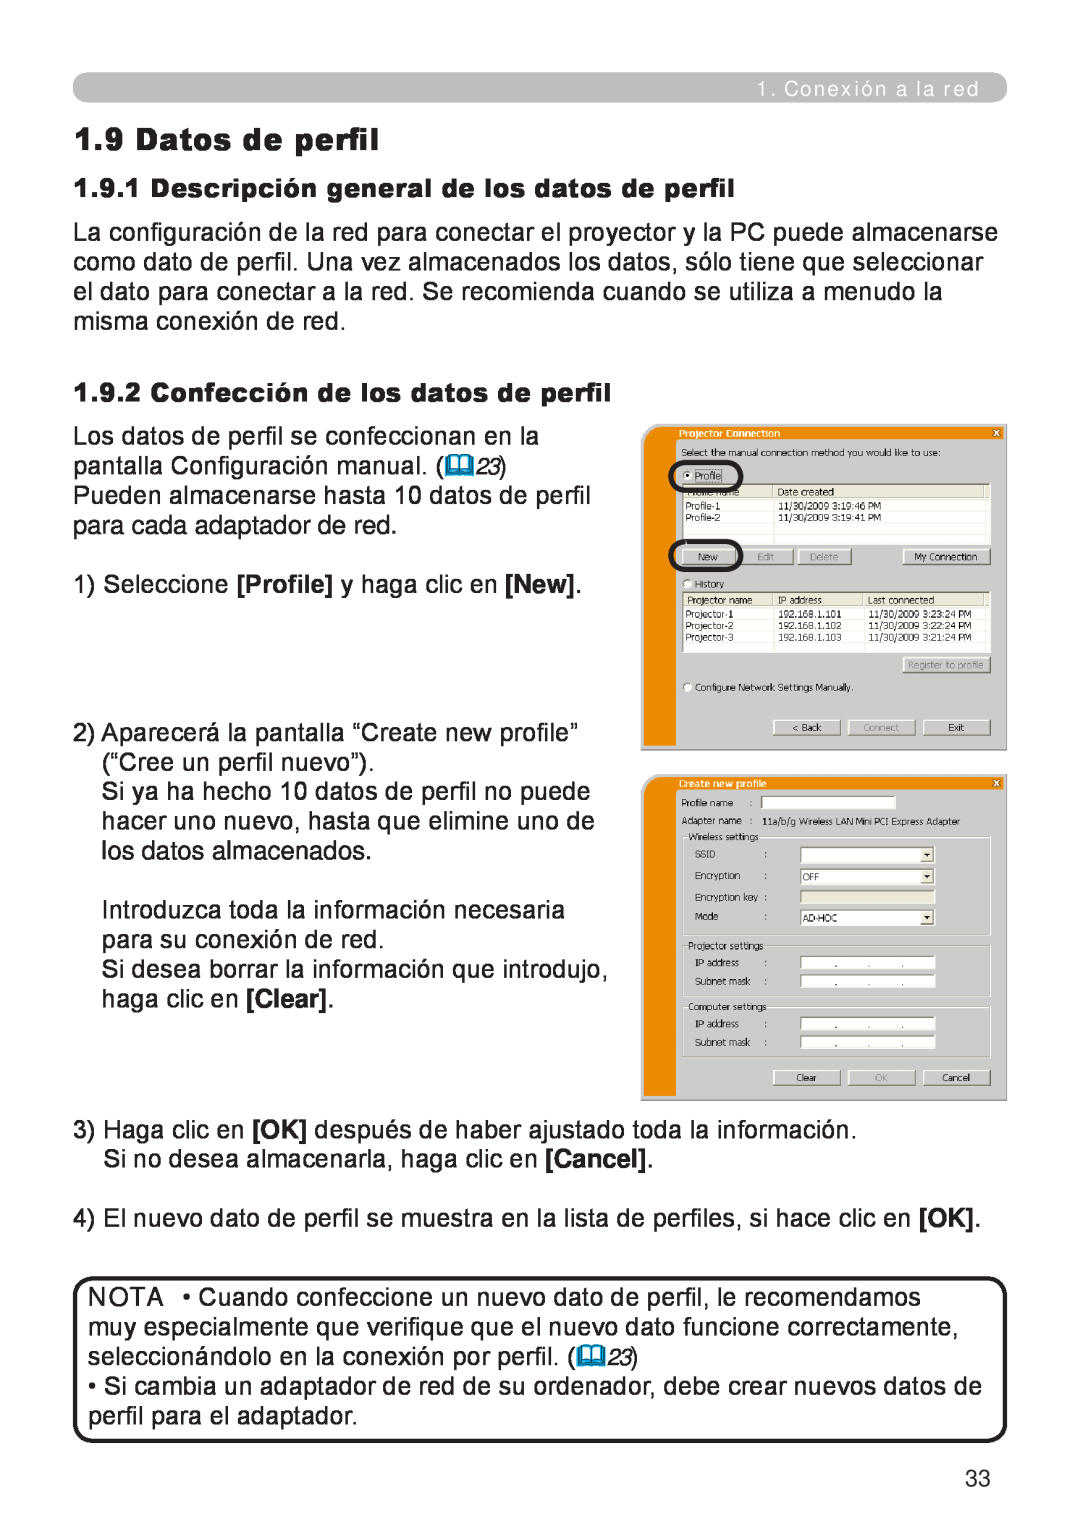 InFocus W60, W61 manual Datos de perfil, Descripción general de los datos de perfil, Confección de los datos de perfil 